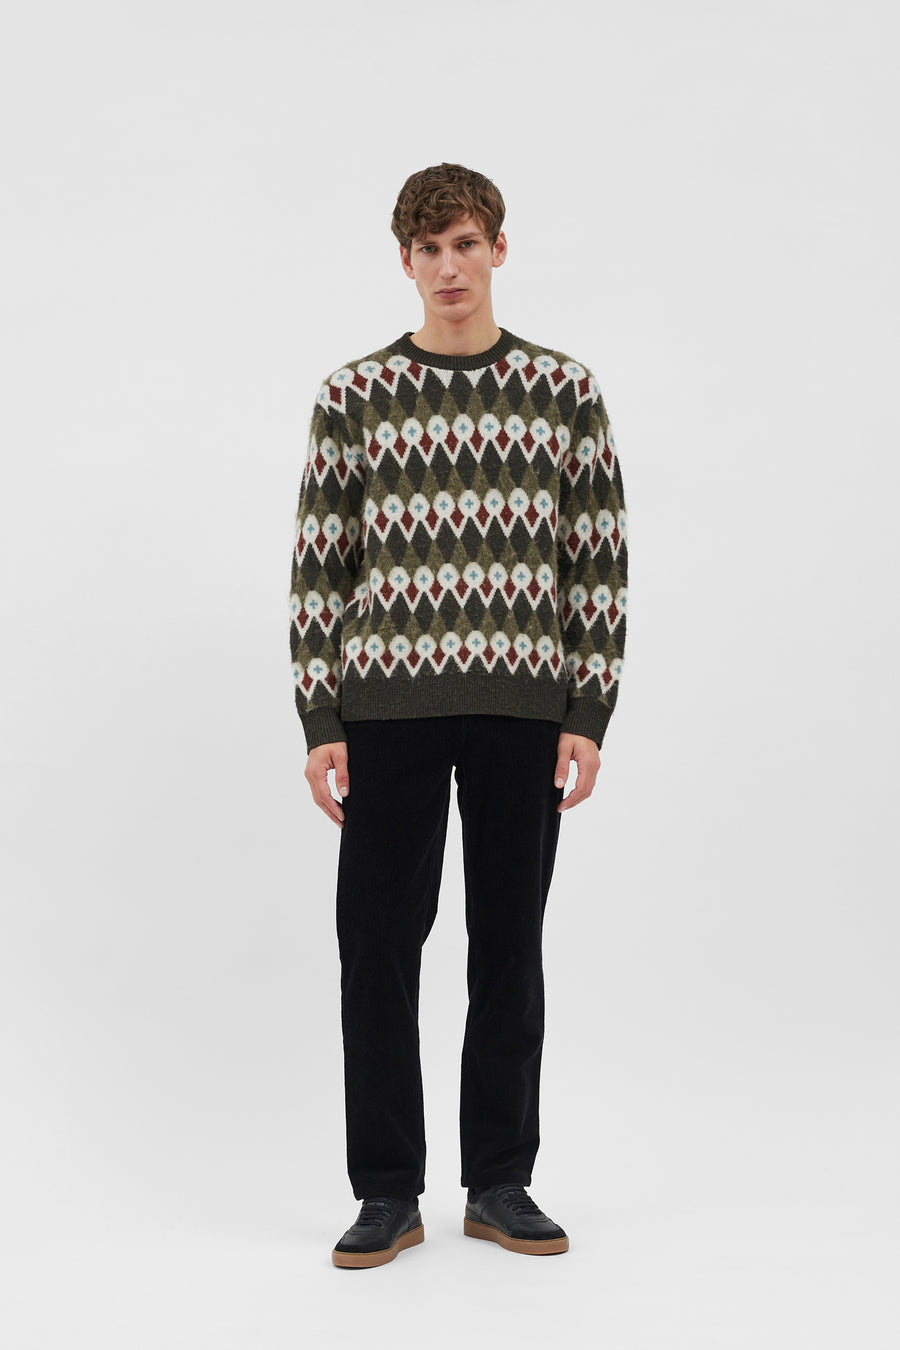 Rune Merino Fair Isle Jacquard sweater Ivy Green